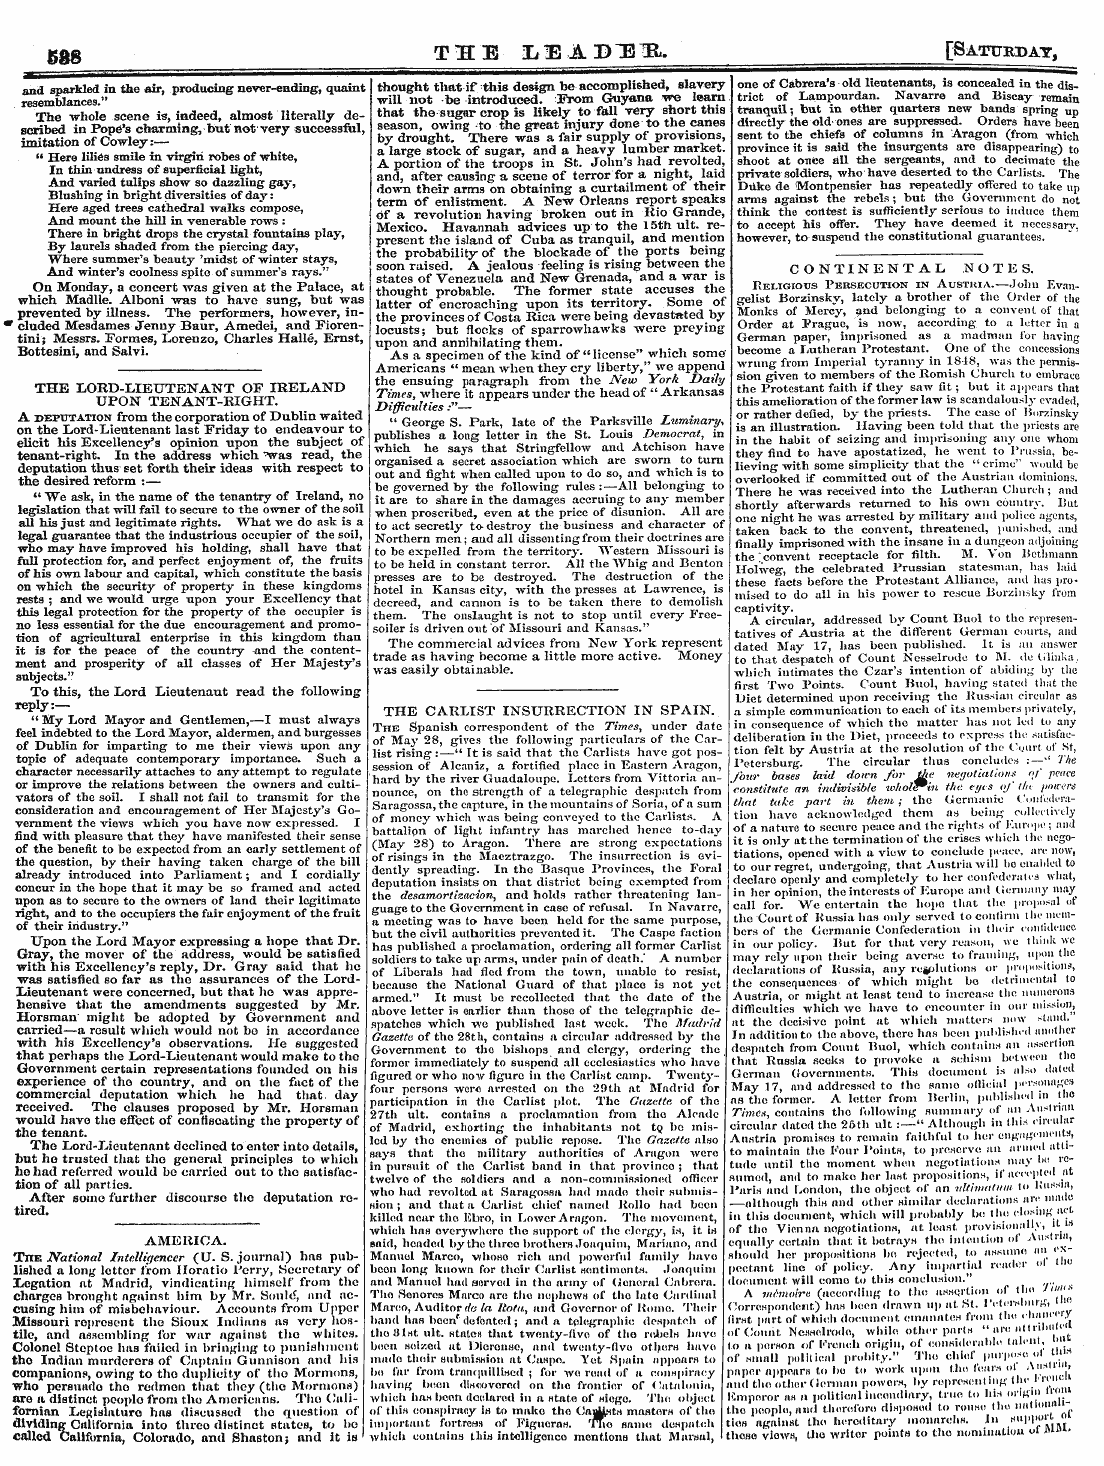 Leader (1850-1860): jS F Y, 2nd edition - Gg 8 Ttece L1ad1sir. [Saturday,